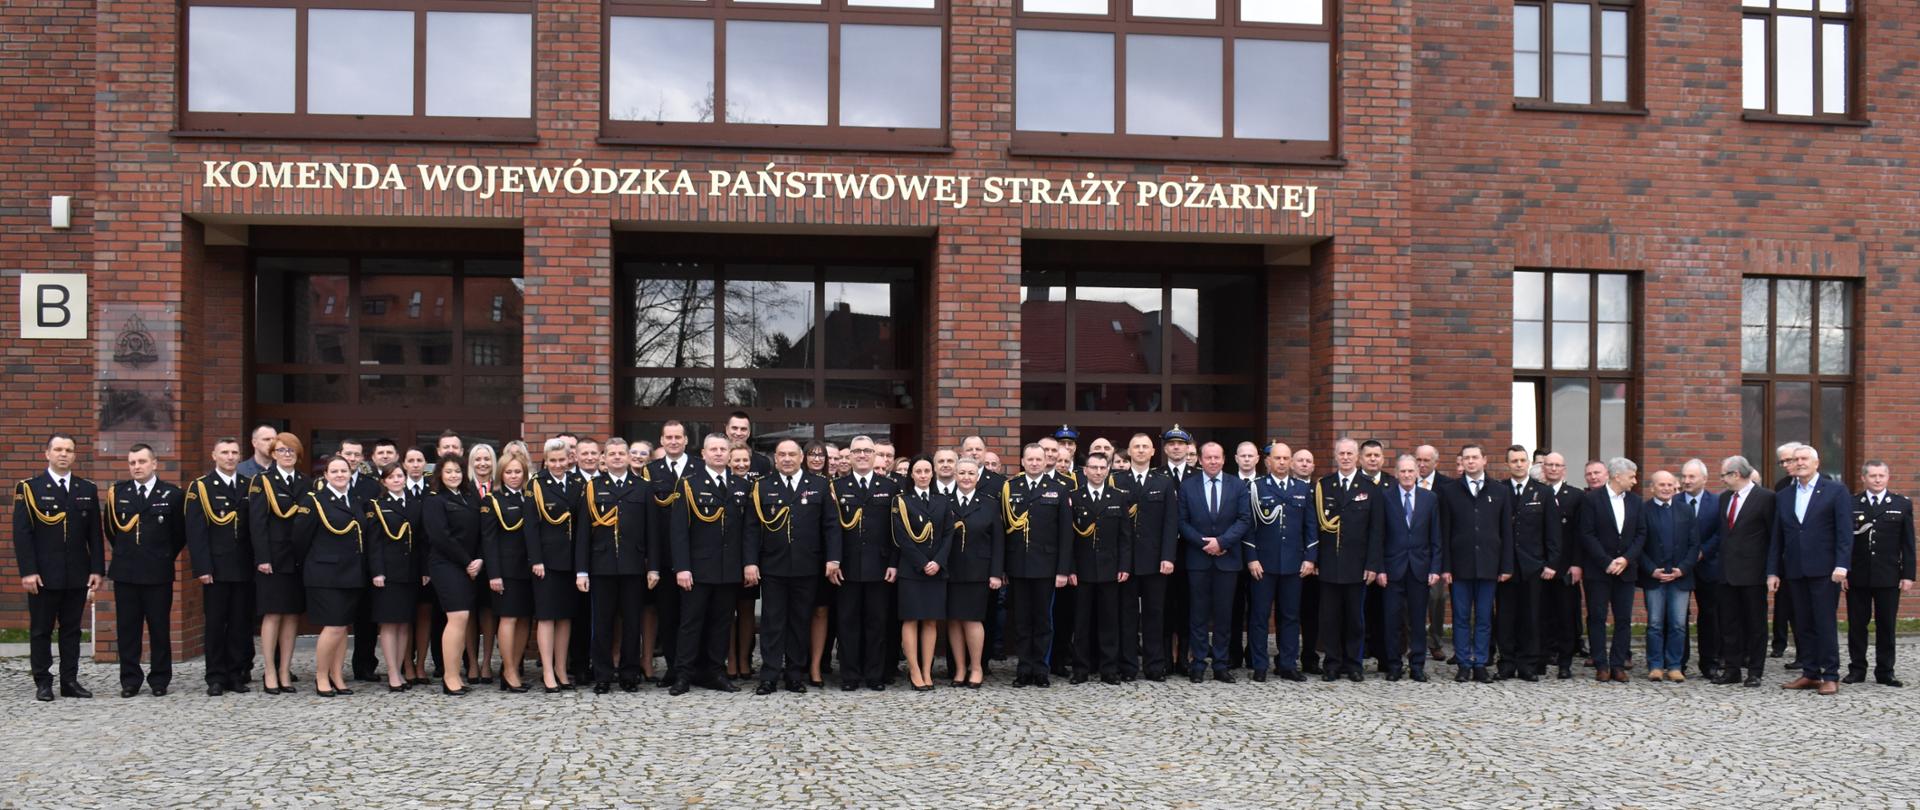 Uroczysta zbiórka z okazji przejścia na zaopatrzenie emerytalne 5 oficerów KW PSP Wrocław